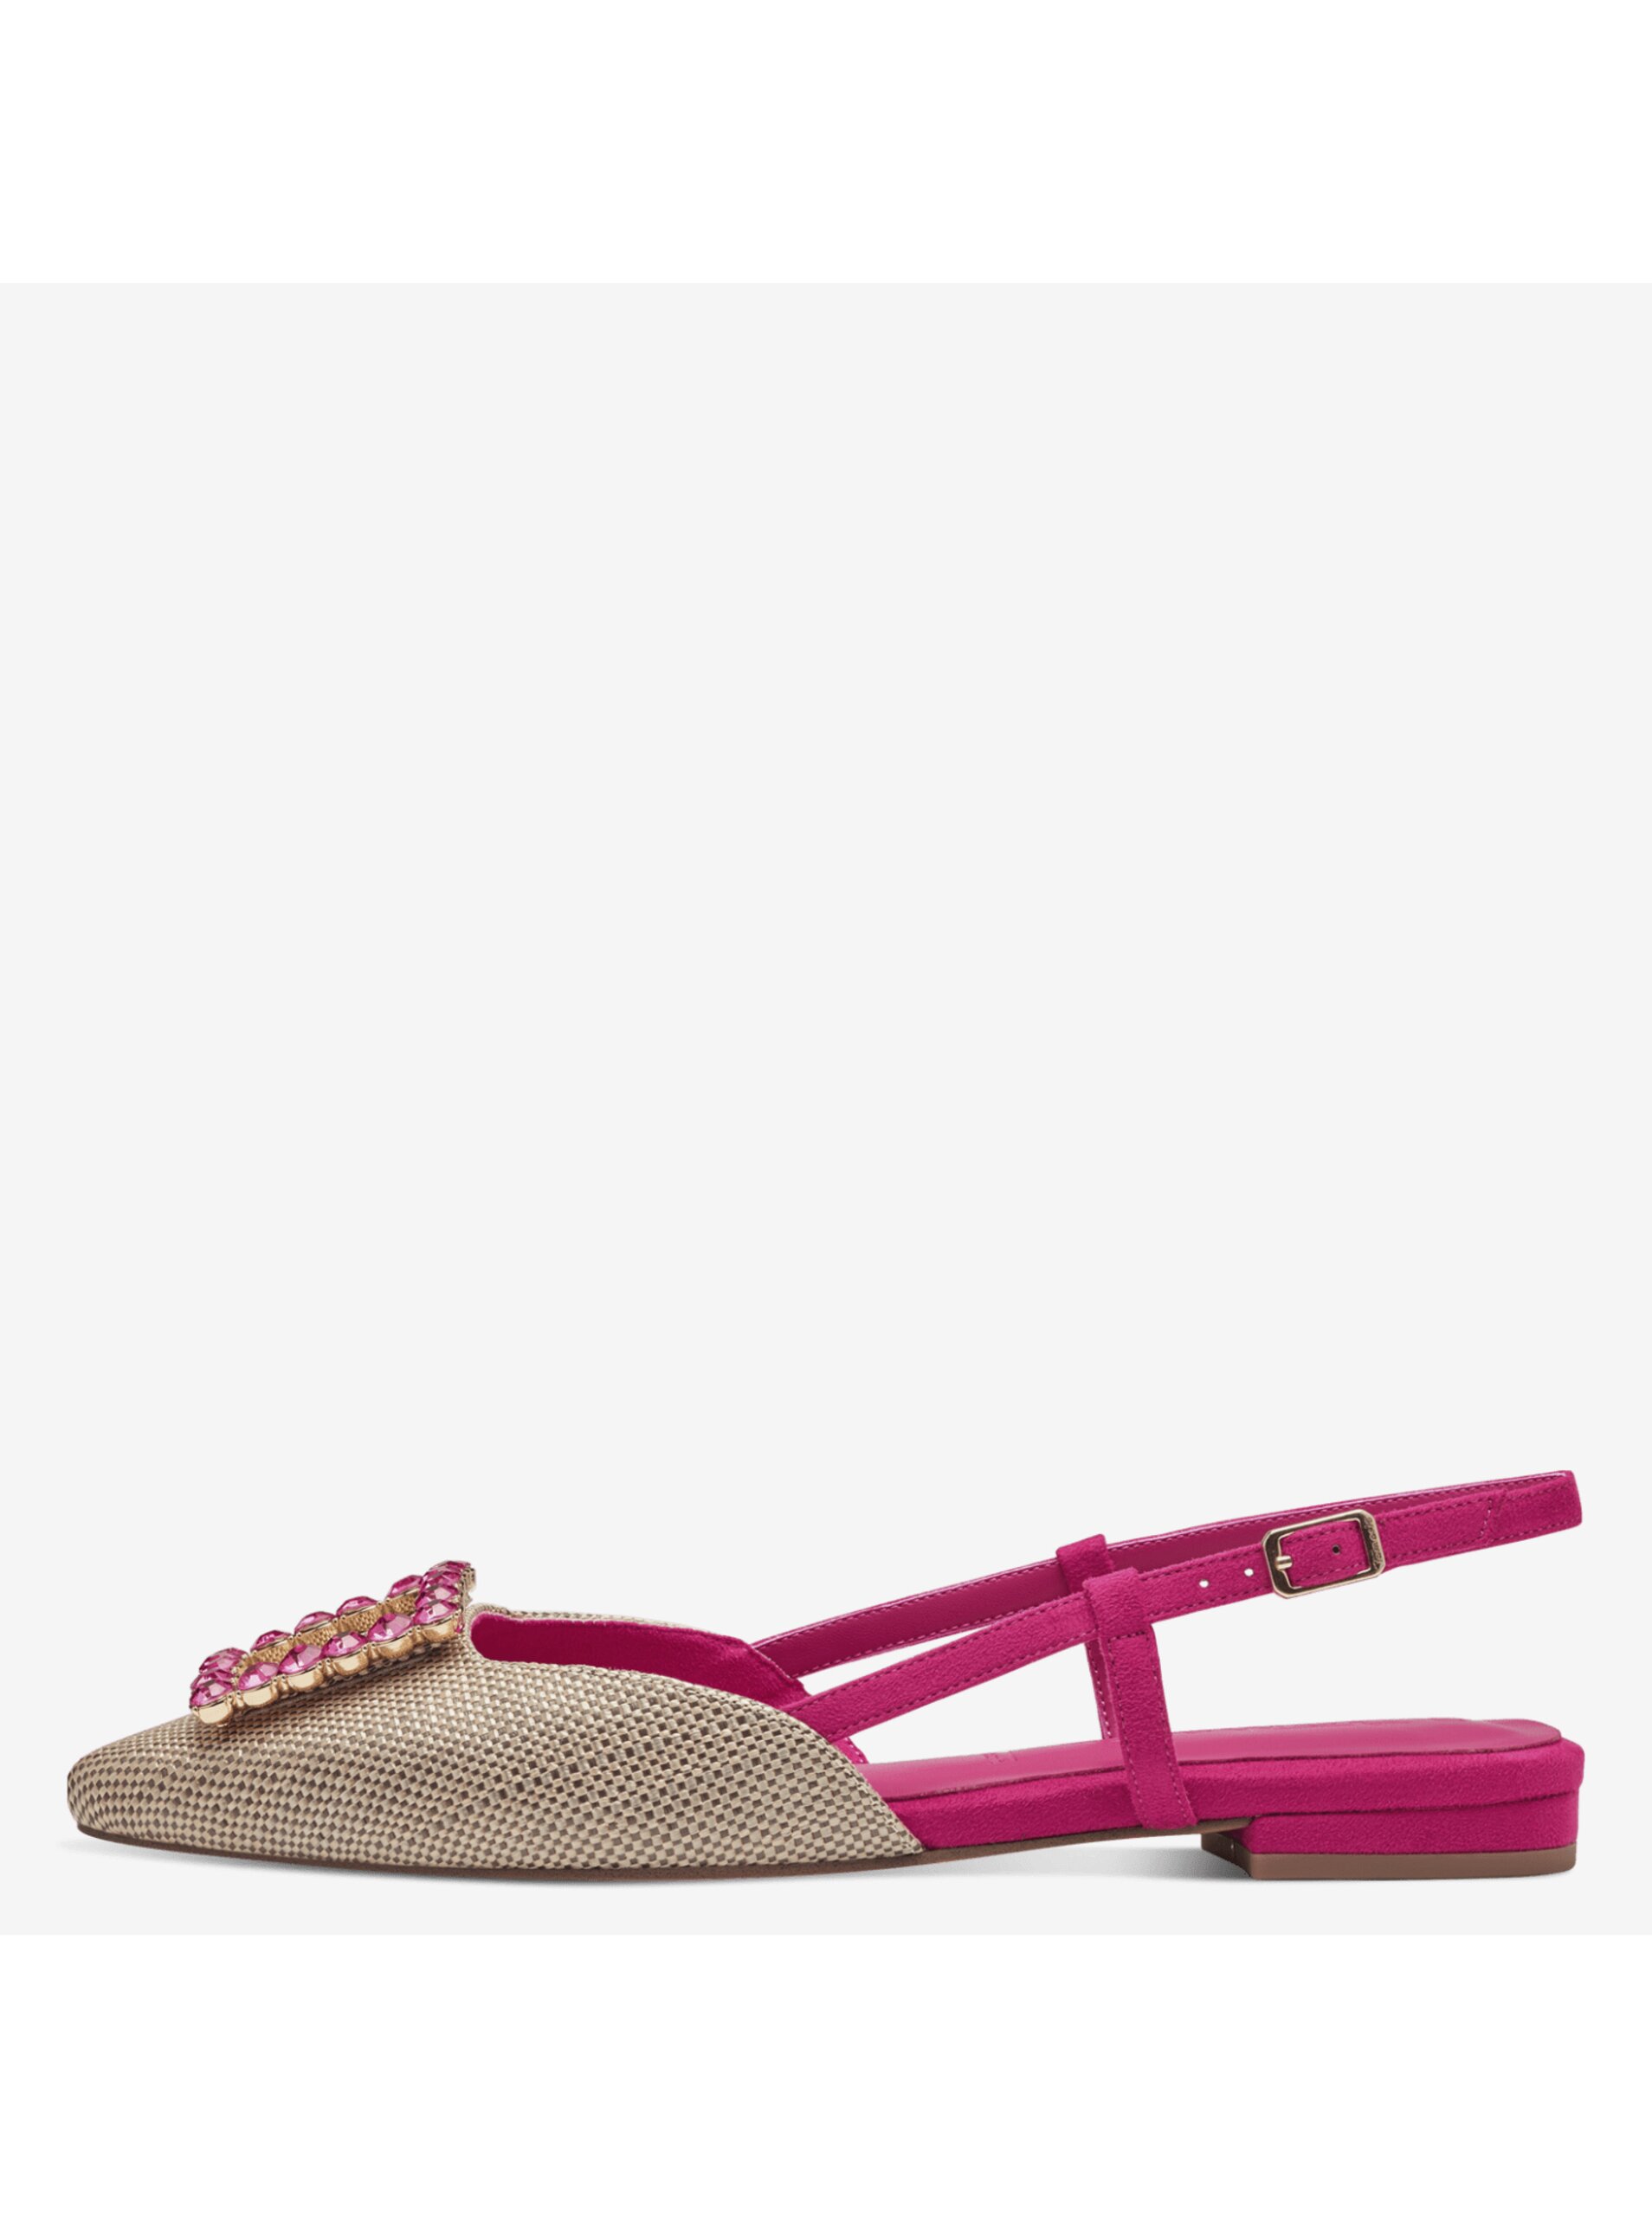 Tamaris women's pink and beige sandals - Women